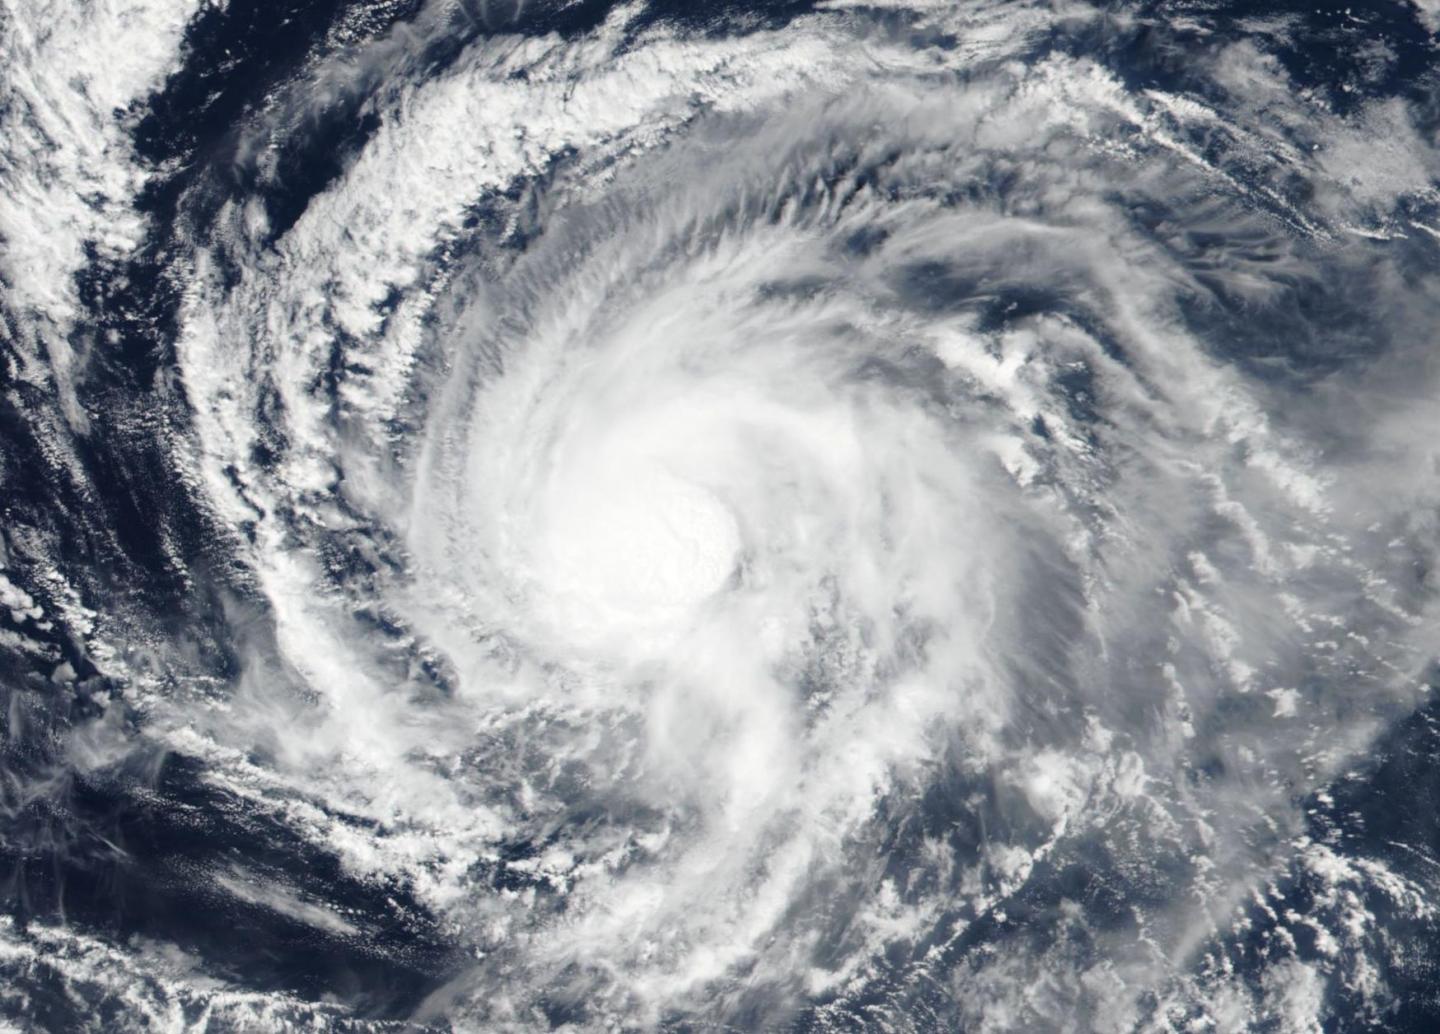 How Does NASA Study Hurricanes? - NASA